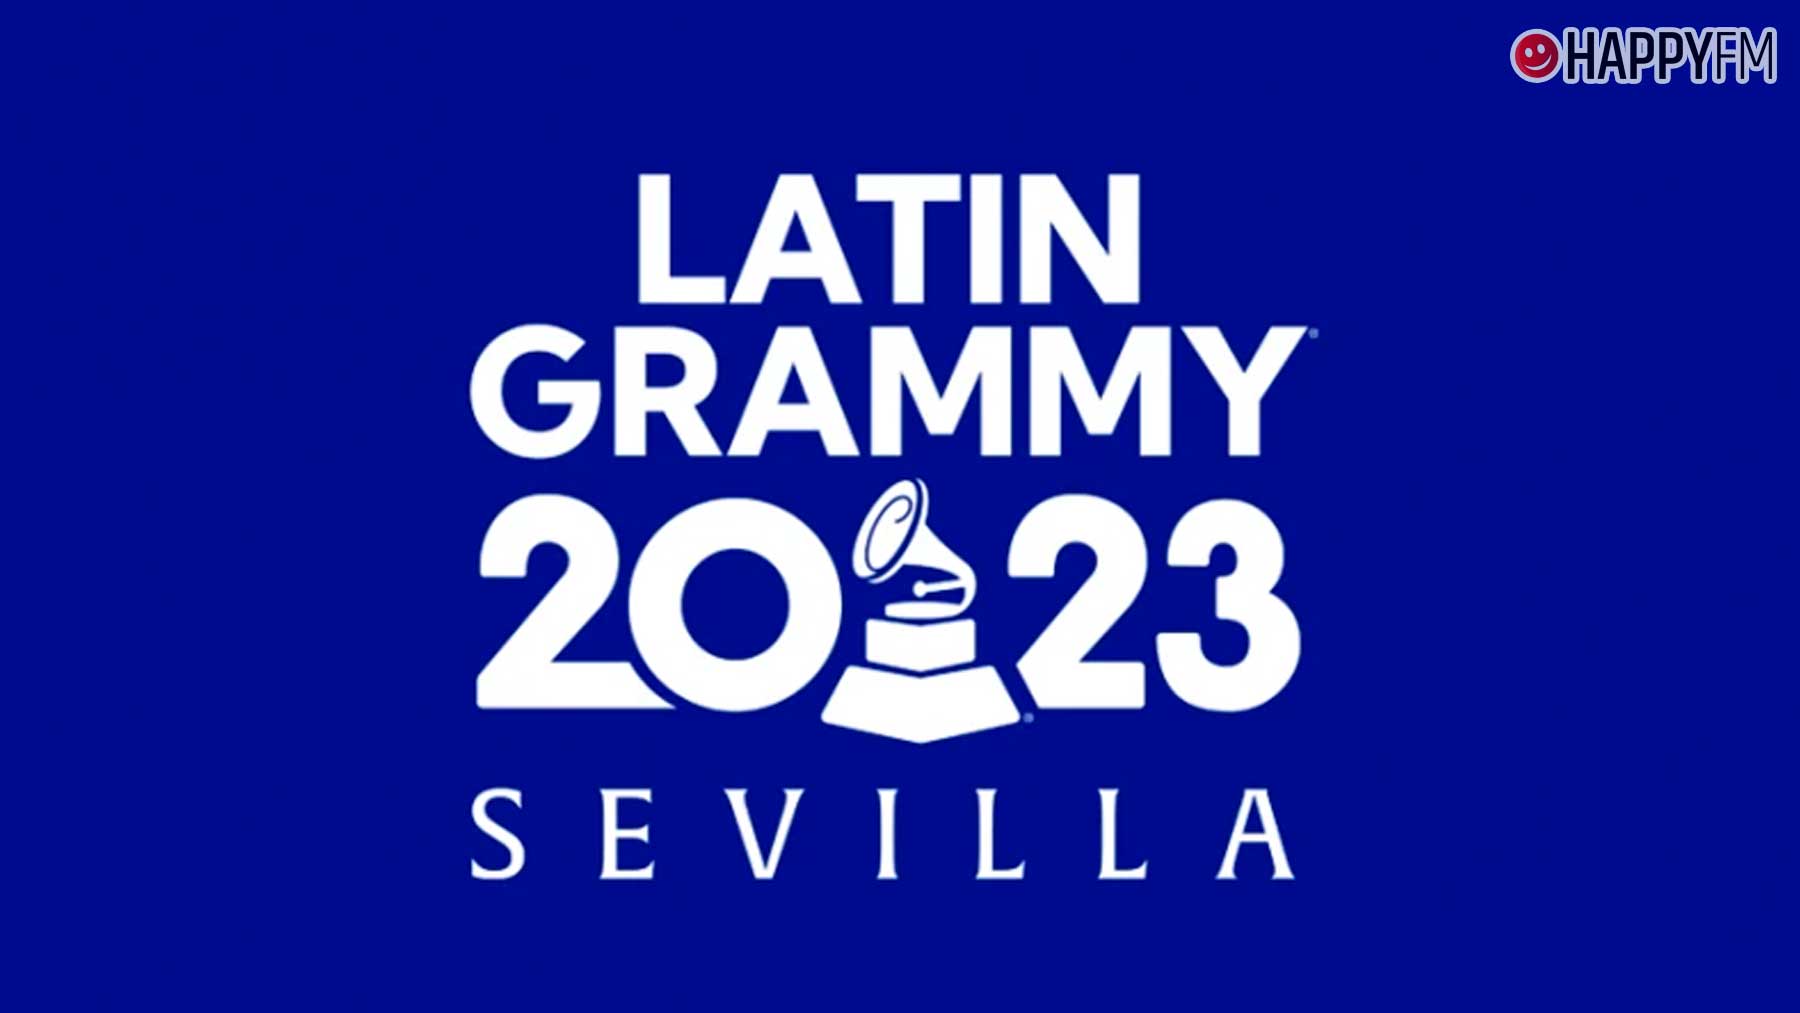 ‘Latin Grammy 2023’: estos son los artistas que actuarán en la gala que se celebrará en Sevilla